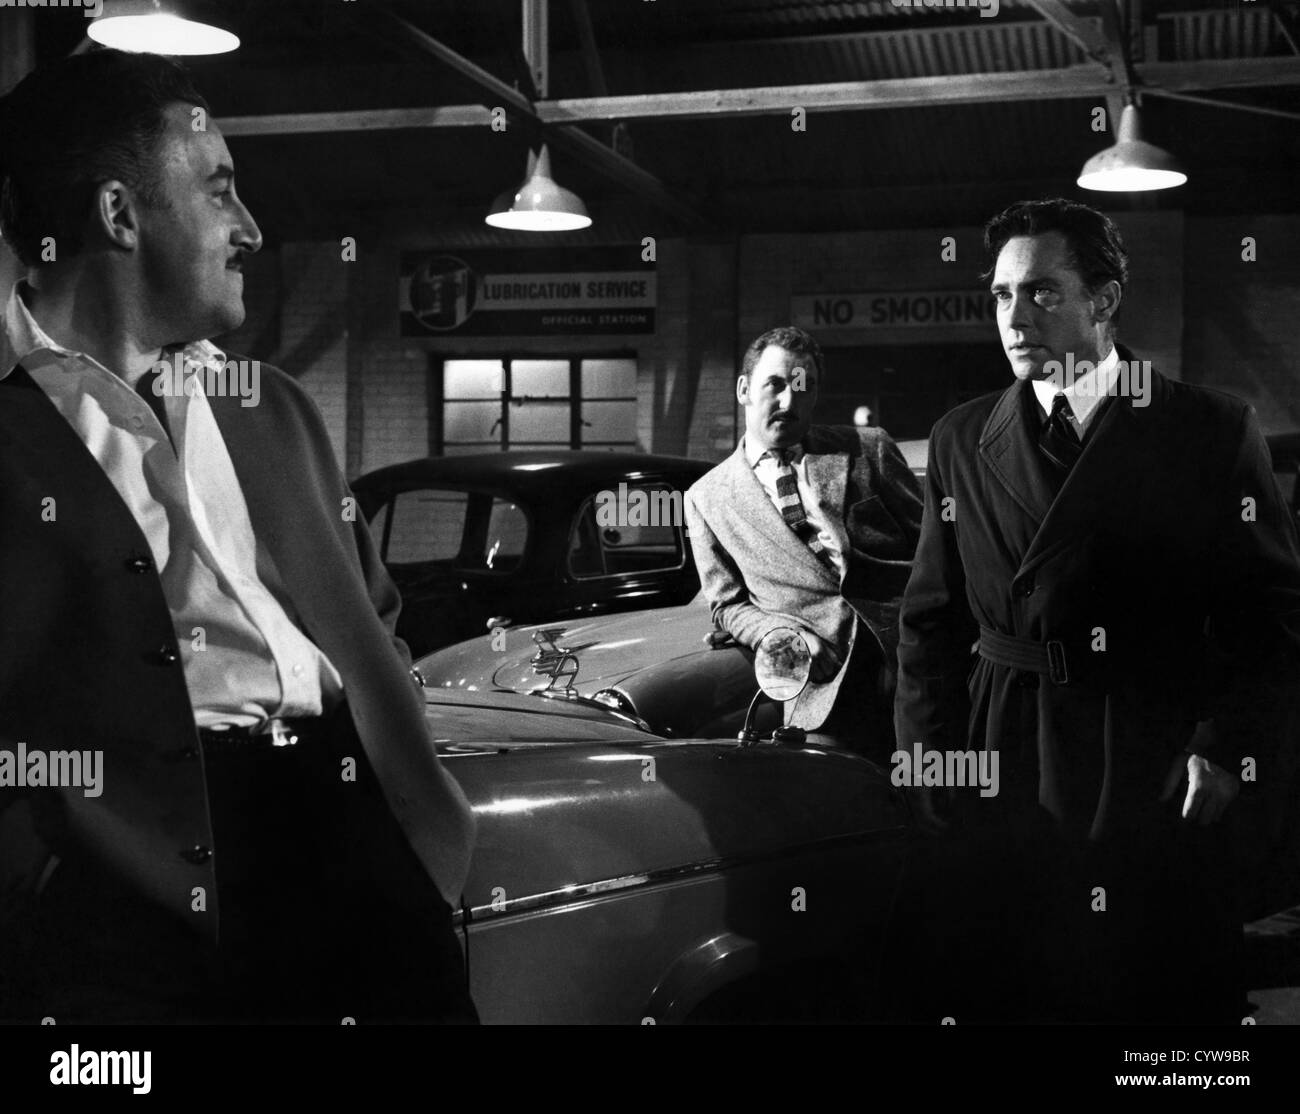 MAI LASCIARE ANDARE (1960) PETER VENDITORI; RICHARD TODD; JOHN GUILLERMIN (DIR) NLGO 007 MOVIESTORE COLLECTION LTD Foto Stock